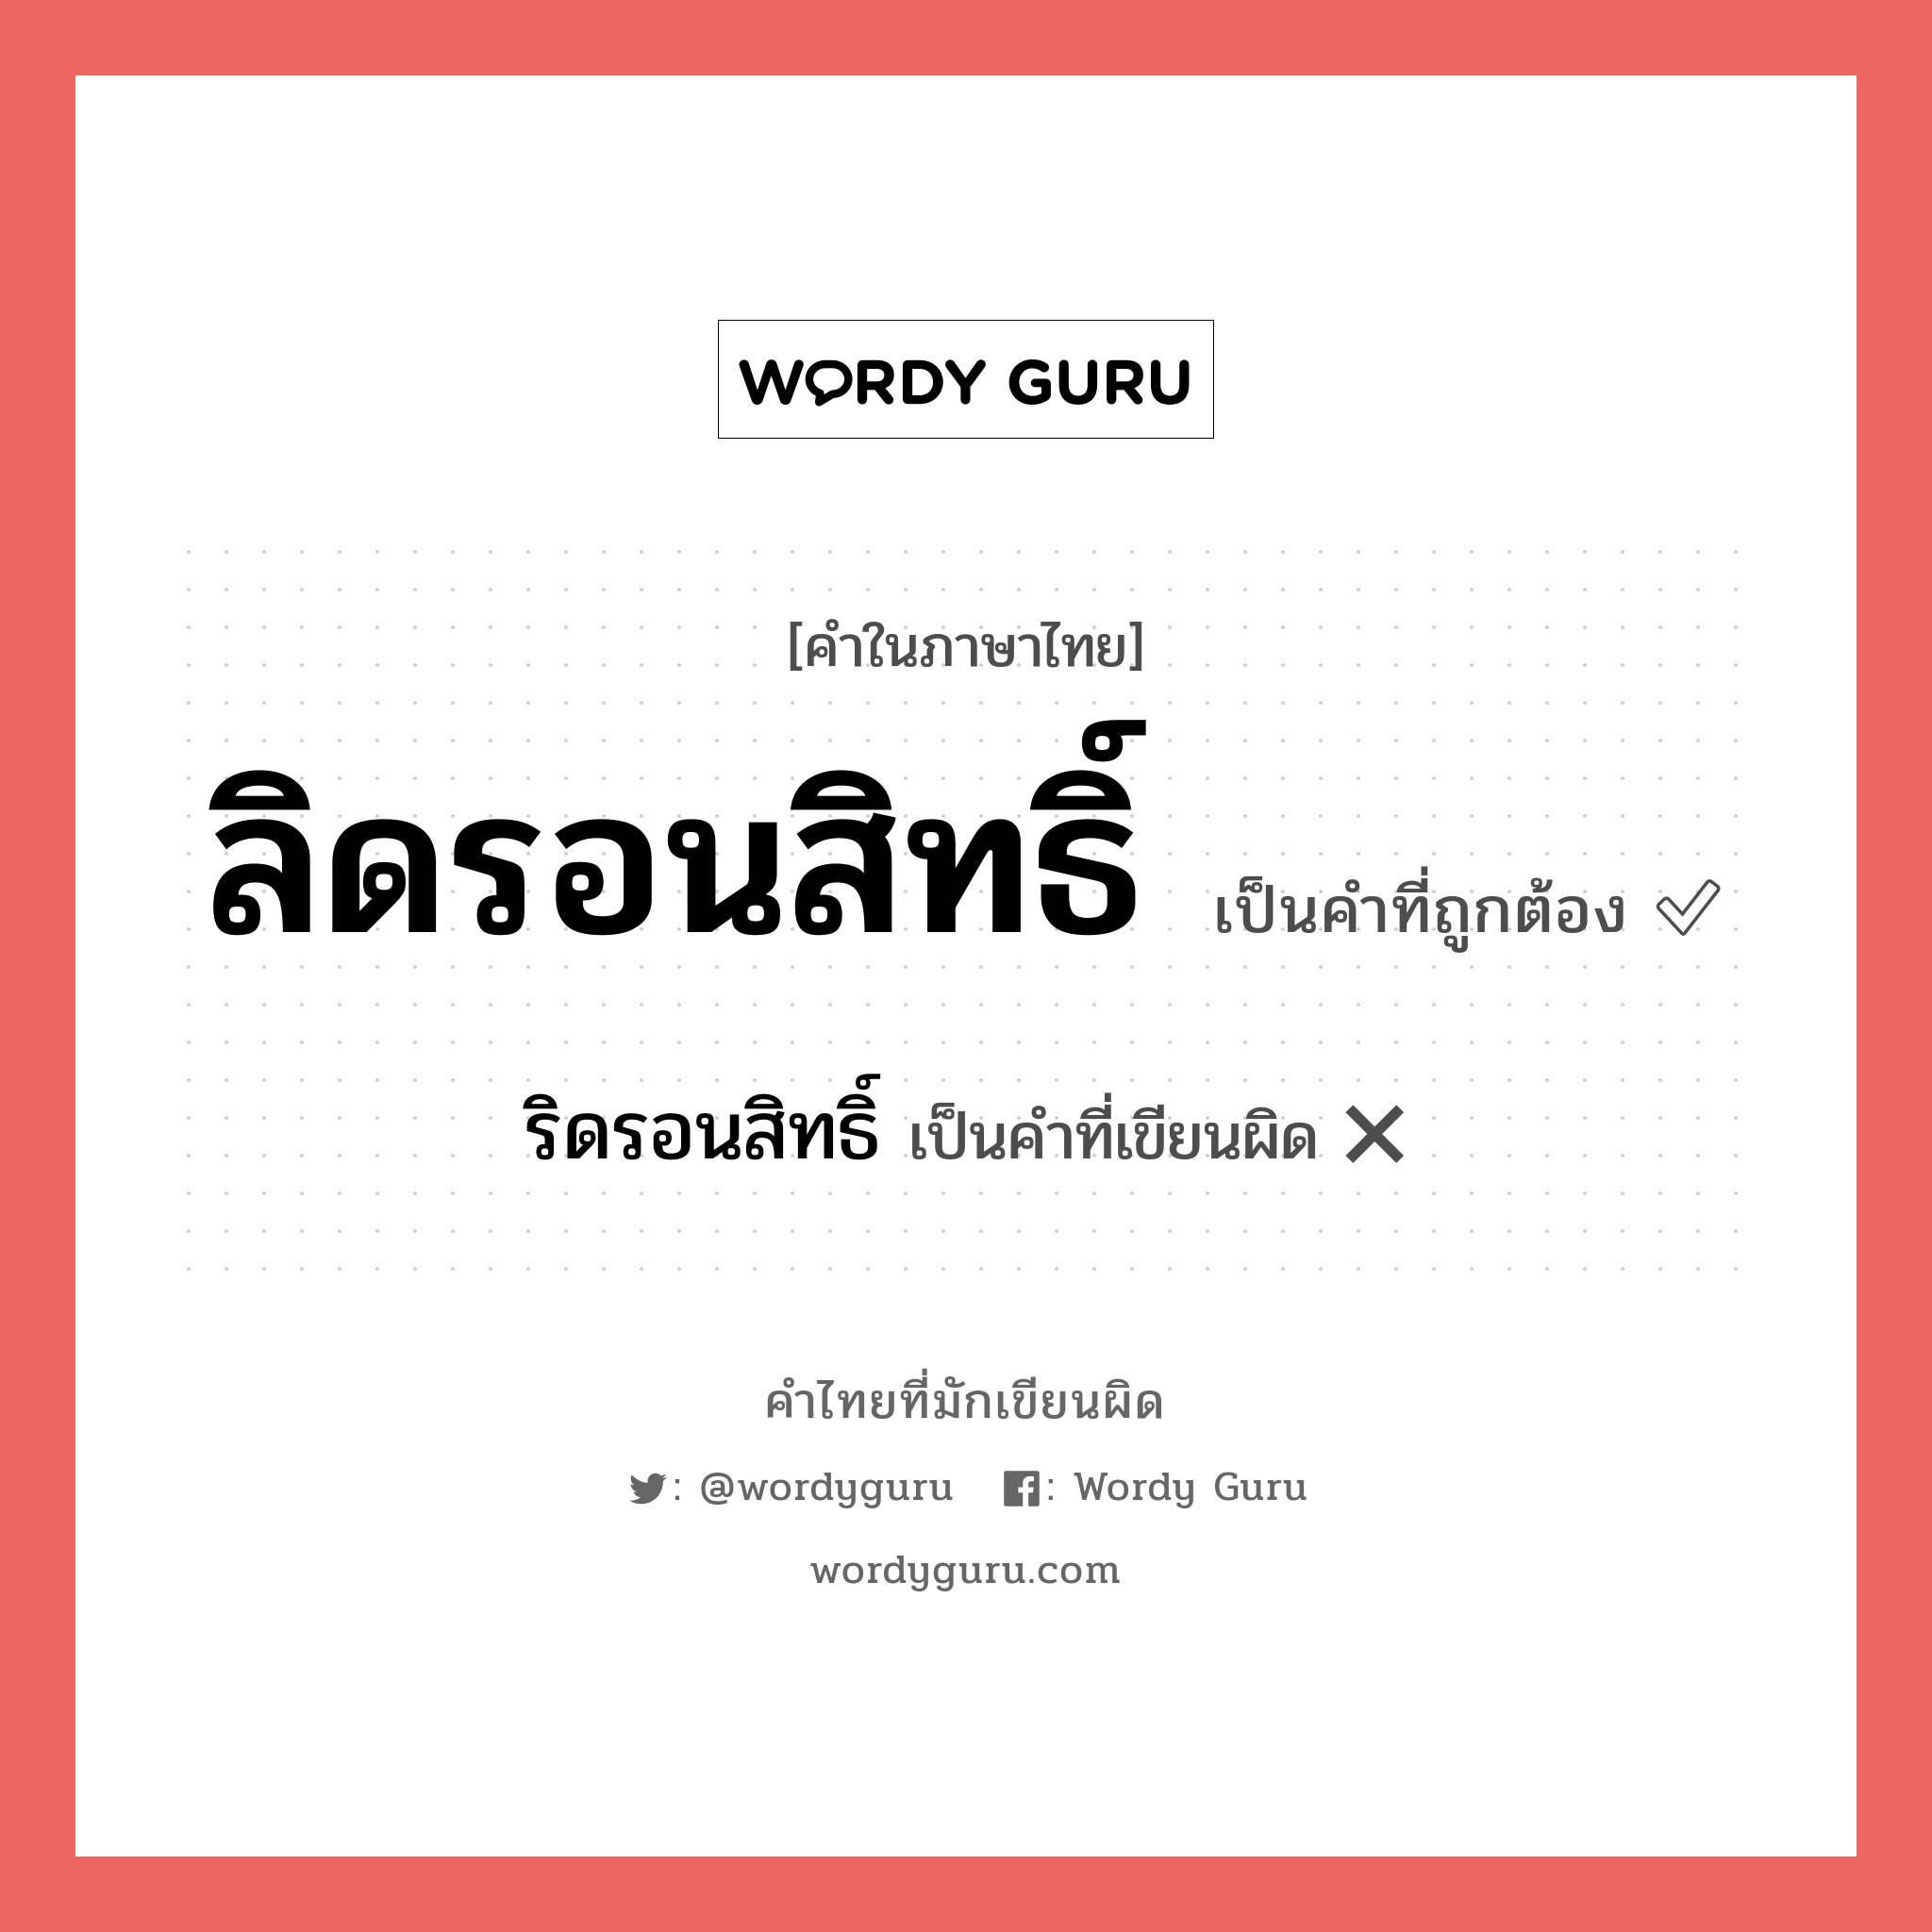 ลิดรอนสิทธิ์ หรือ ริดรอนสิทธิ์ คำไหนเขียนถูก?, คำในภาษาไทยที่มักเขียนผิด ลิดรอนสิทธิ์ คำที่ผิด ❌ ริดรอนสิทธิ์